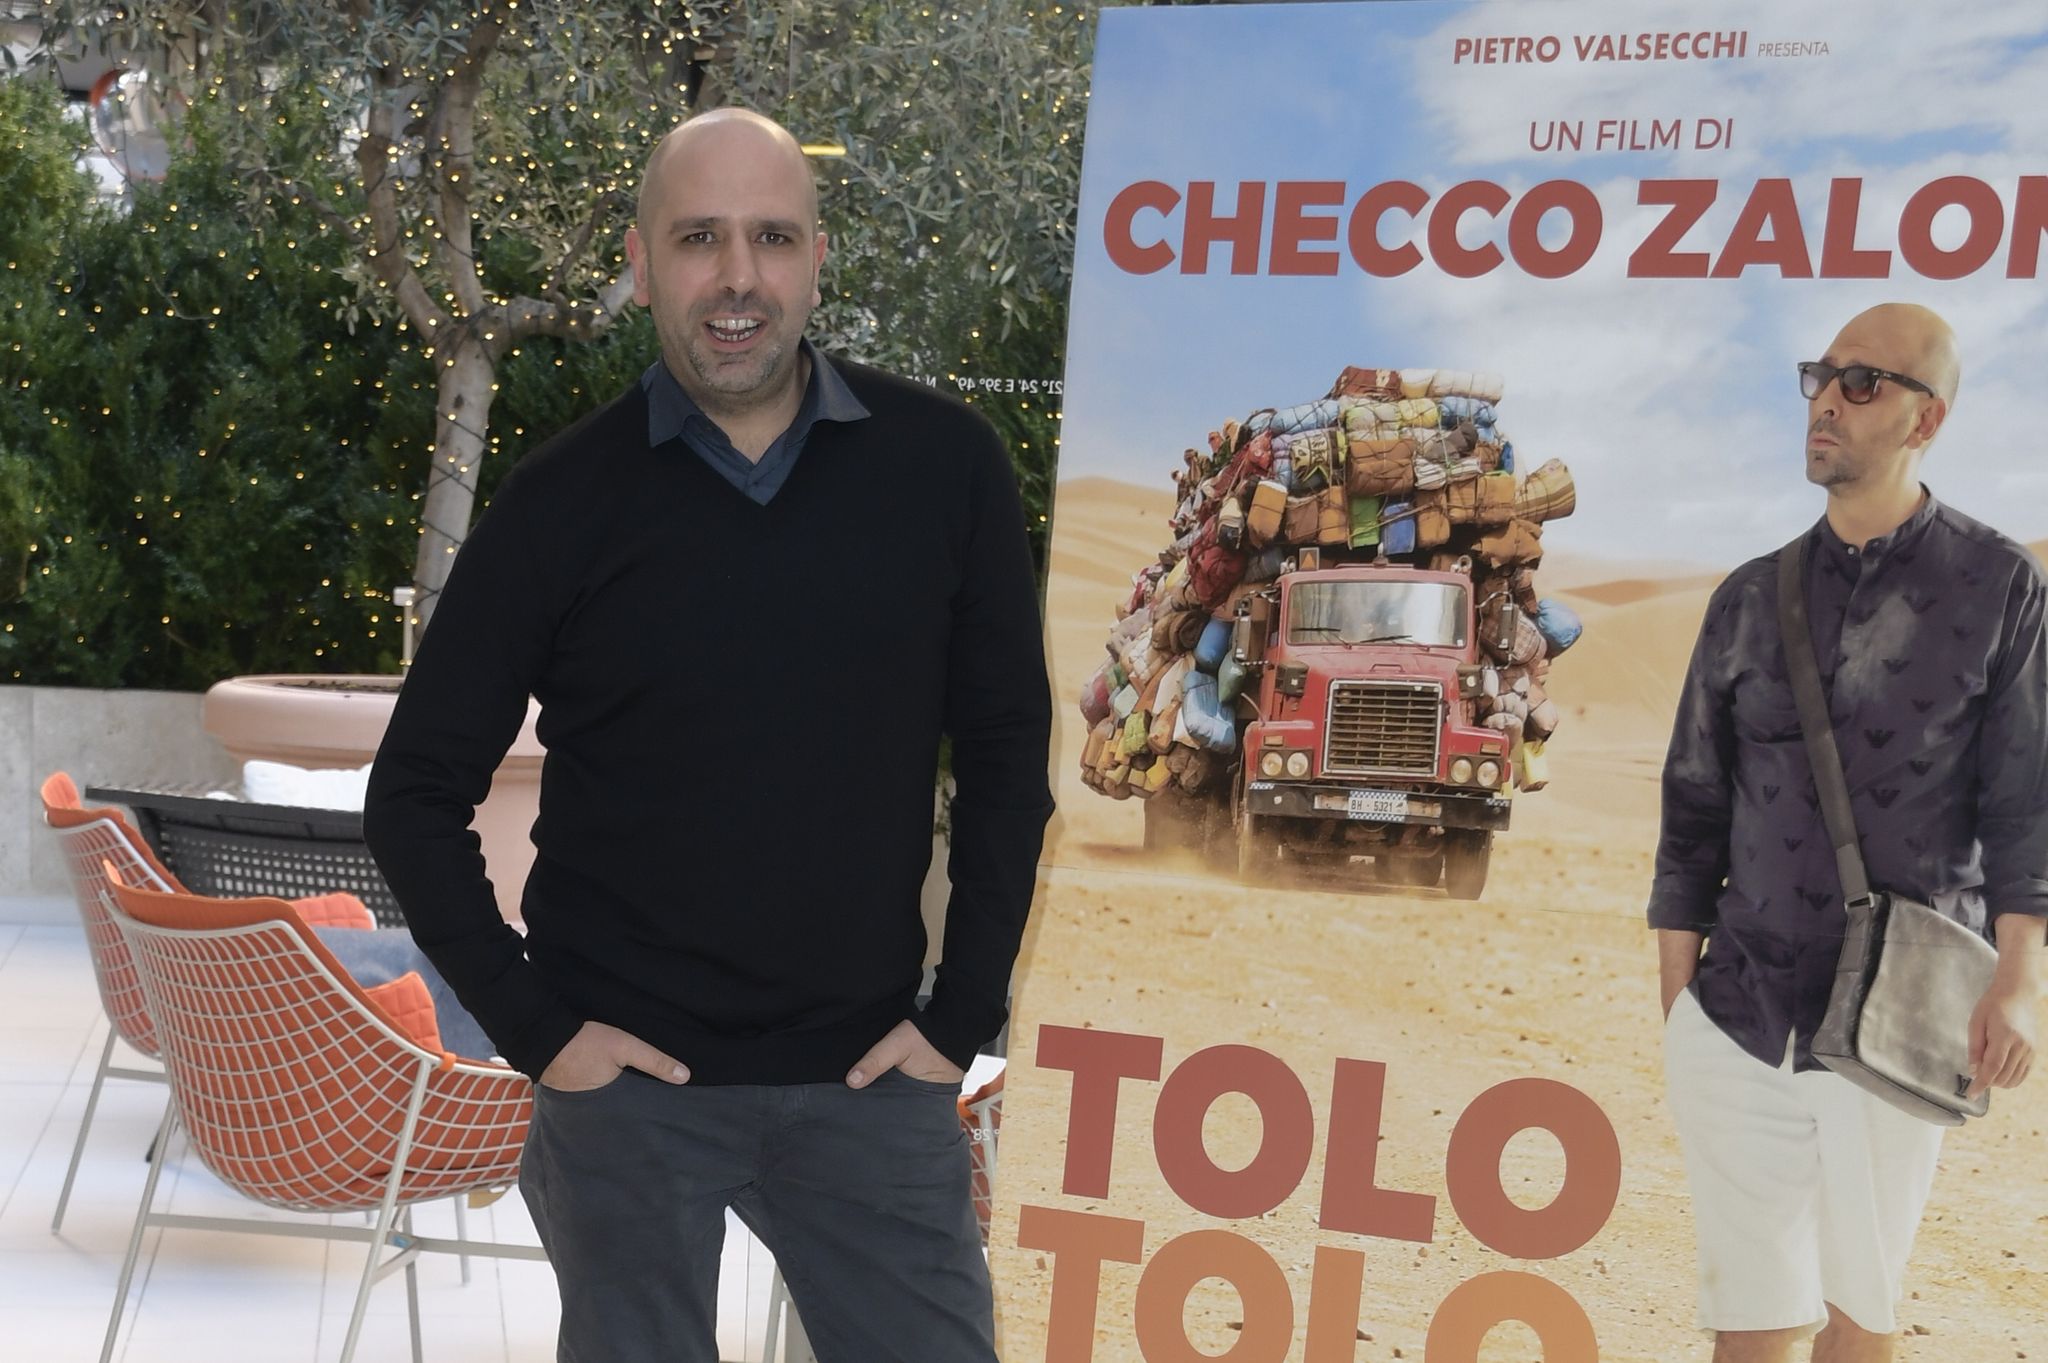 Perché il nuovo film di Checco Zalone Tolo Tolo è razzista?